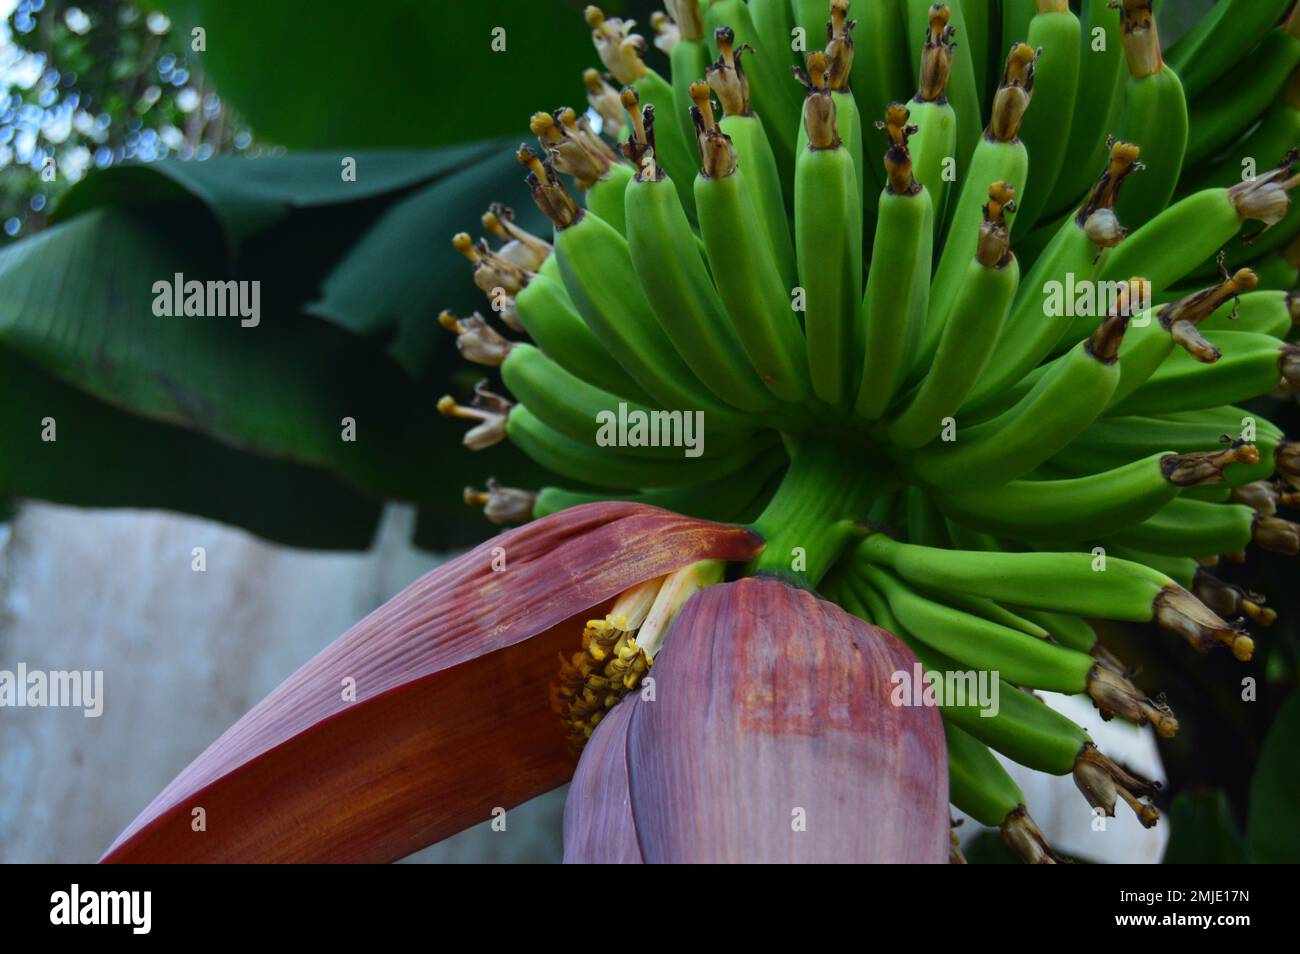 Junge Bananenfrüchte und Bananenblüten hängen noch am Baum. Frisches grünes junges Obst, frische rosa-rote Bananenblüten, oder die Einheimischen sagten "Bananenherz" Stockfoto